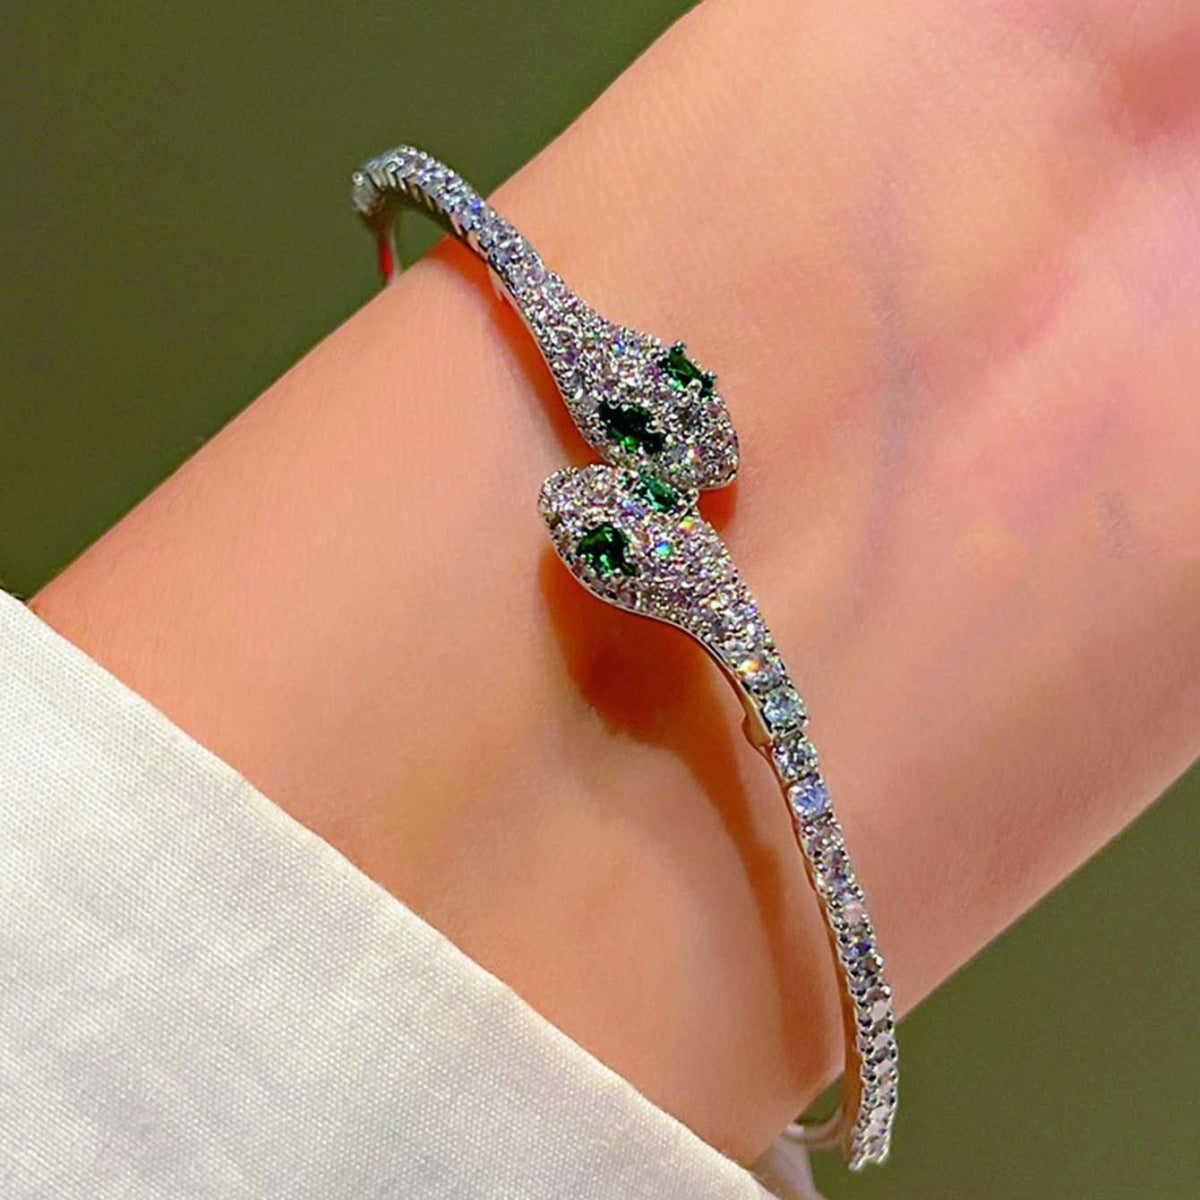 Slytherin Snake Wrist Bracelet